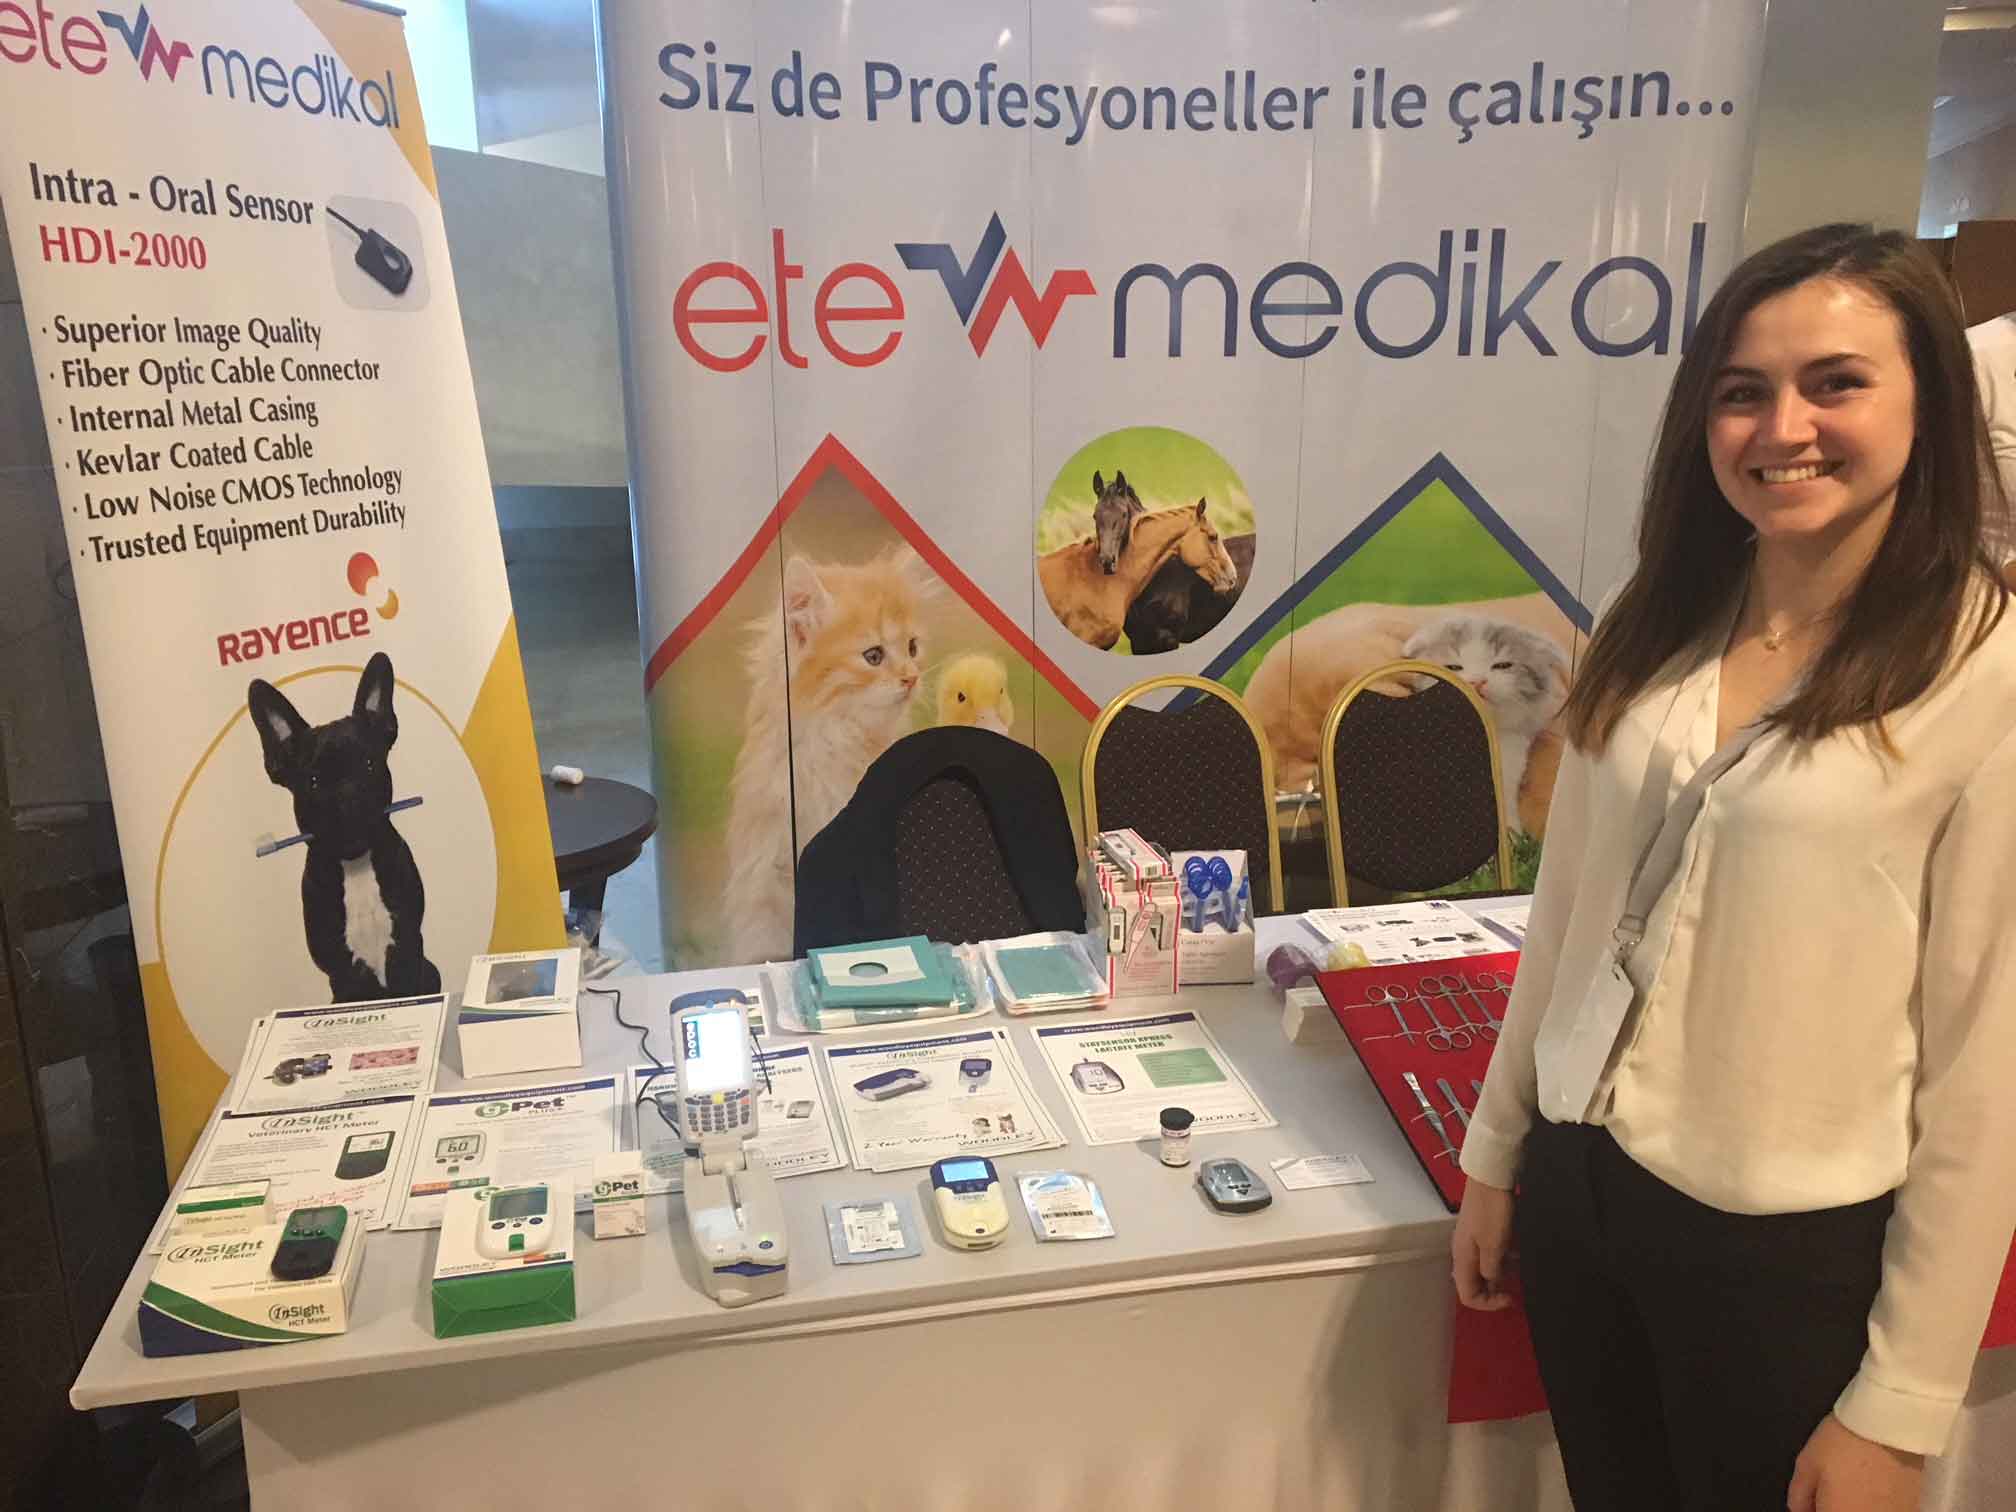 Woodley Vet Diagnostics Support ete medikal at KLIVET 2018, Turkey